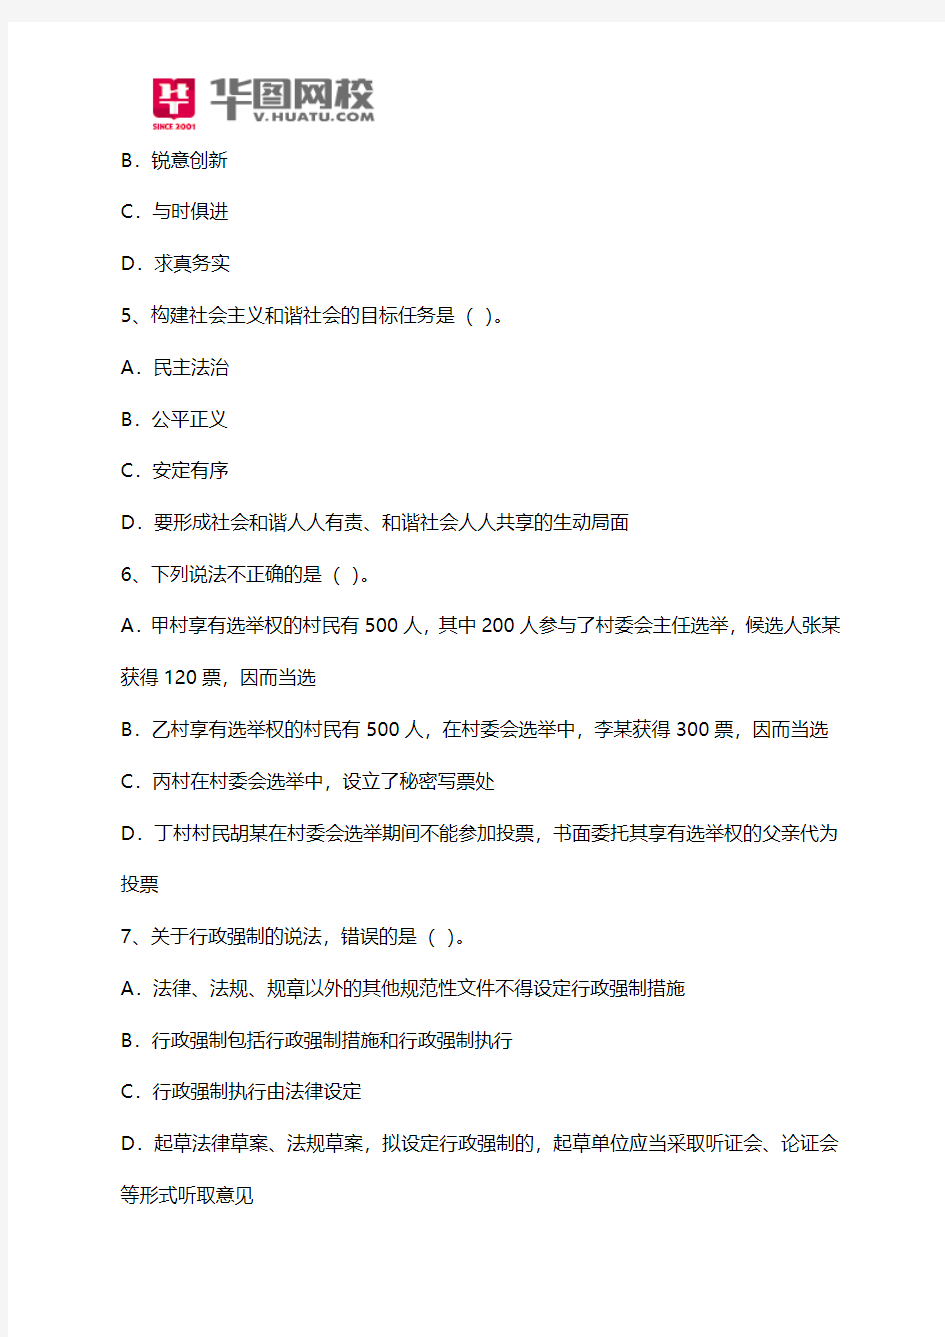 2015年第一季度重庆云阳县事业单位招考笔试试题